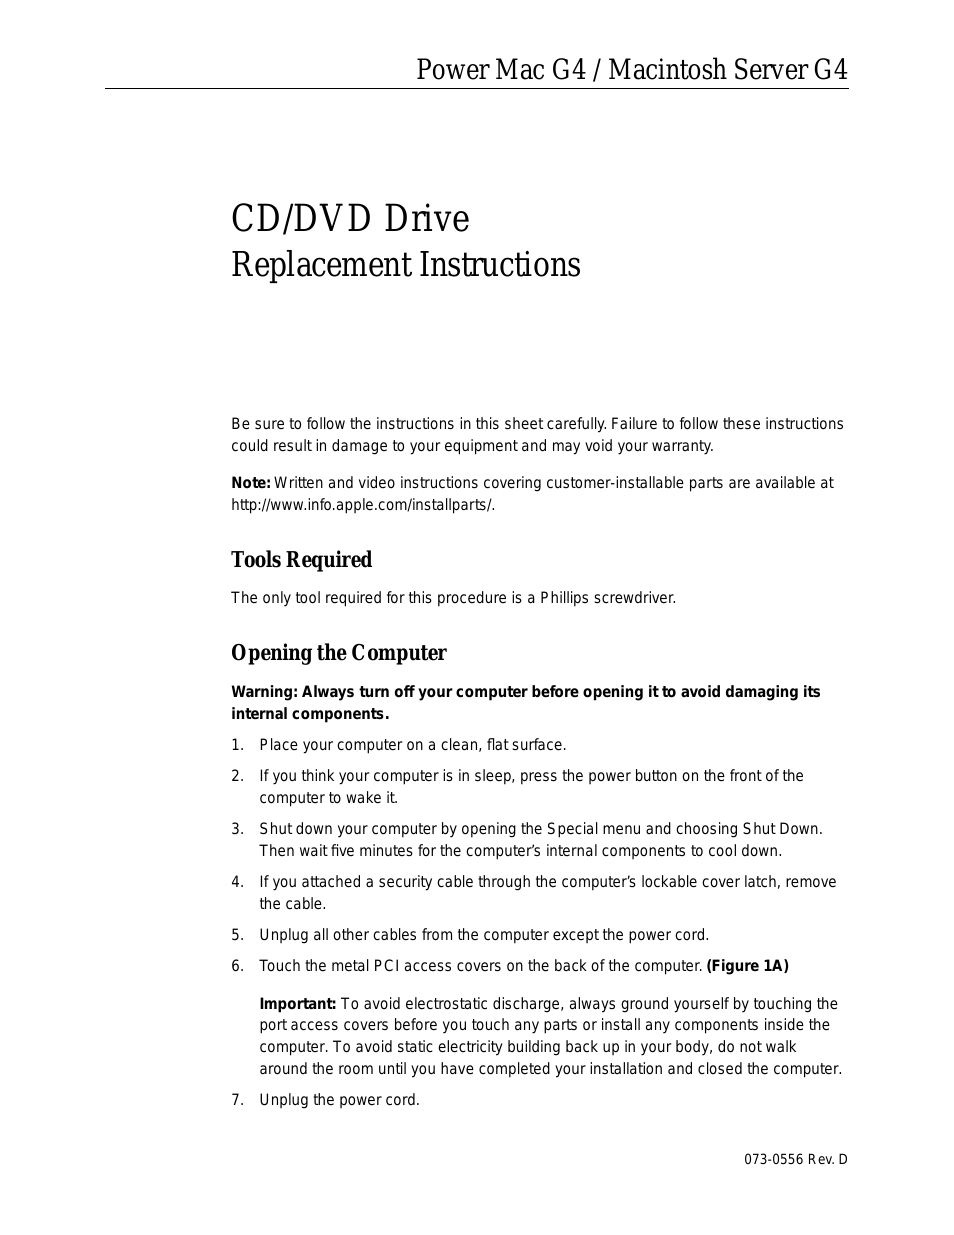 CD/DVD Drive Mac G4